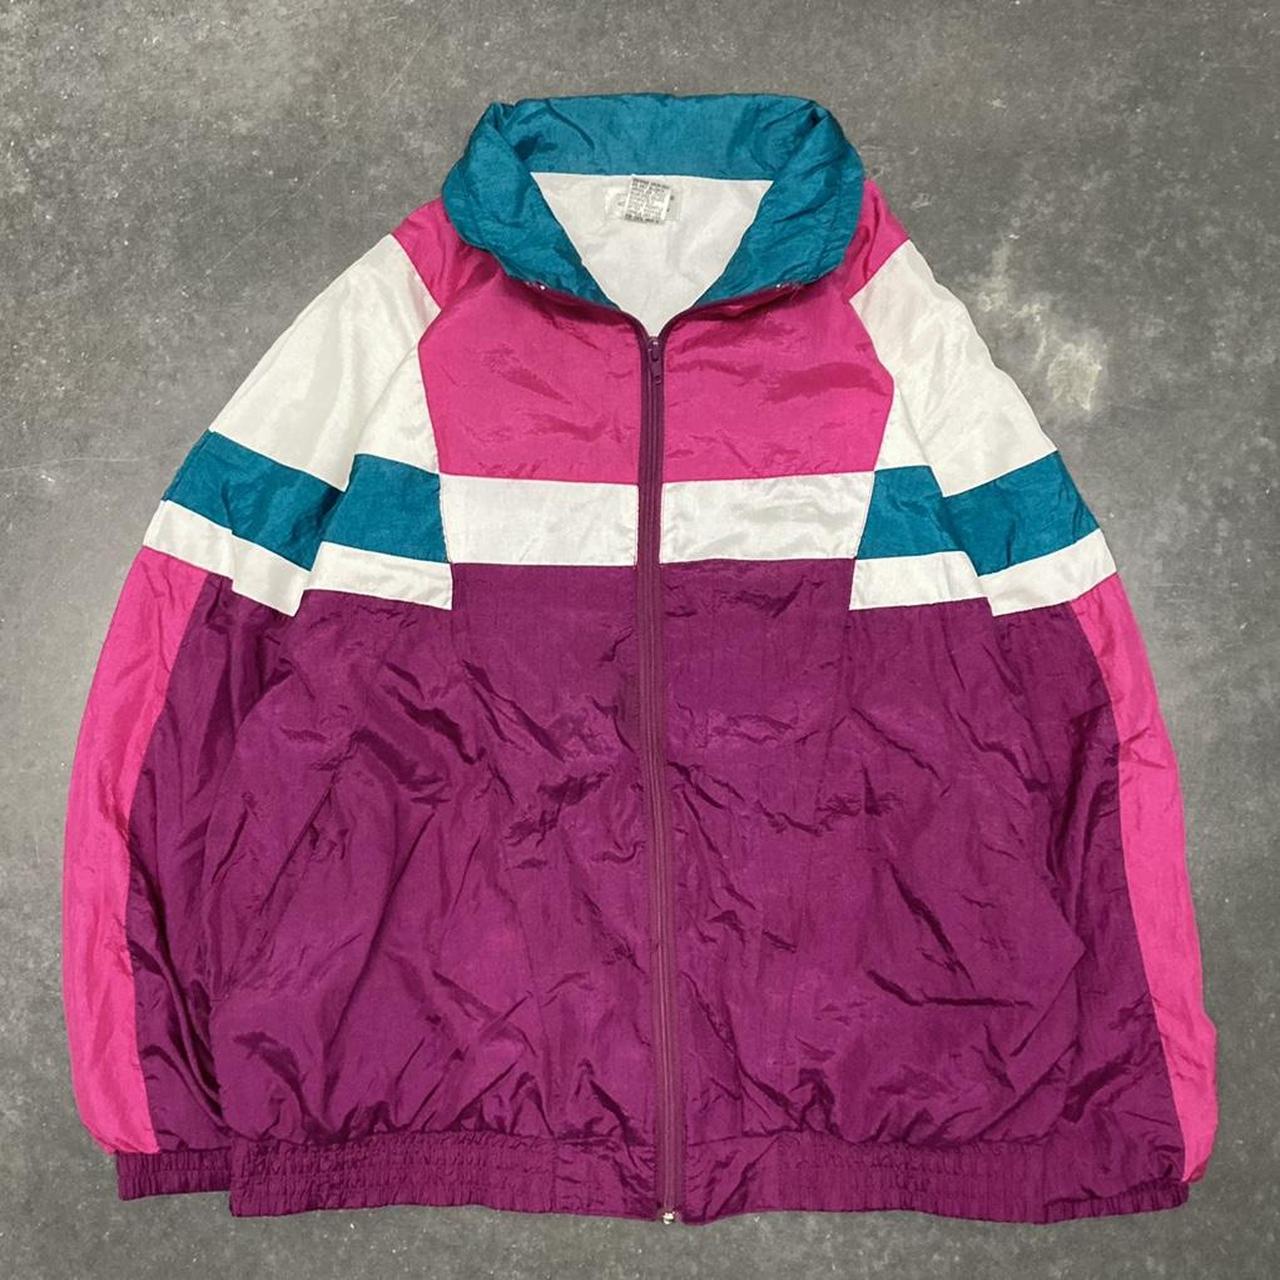 Vintage Colorblock Windbreaker Jacket. Vintage Neon... - Depop